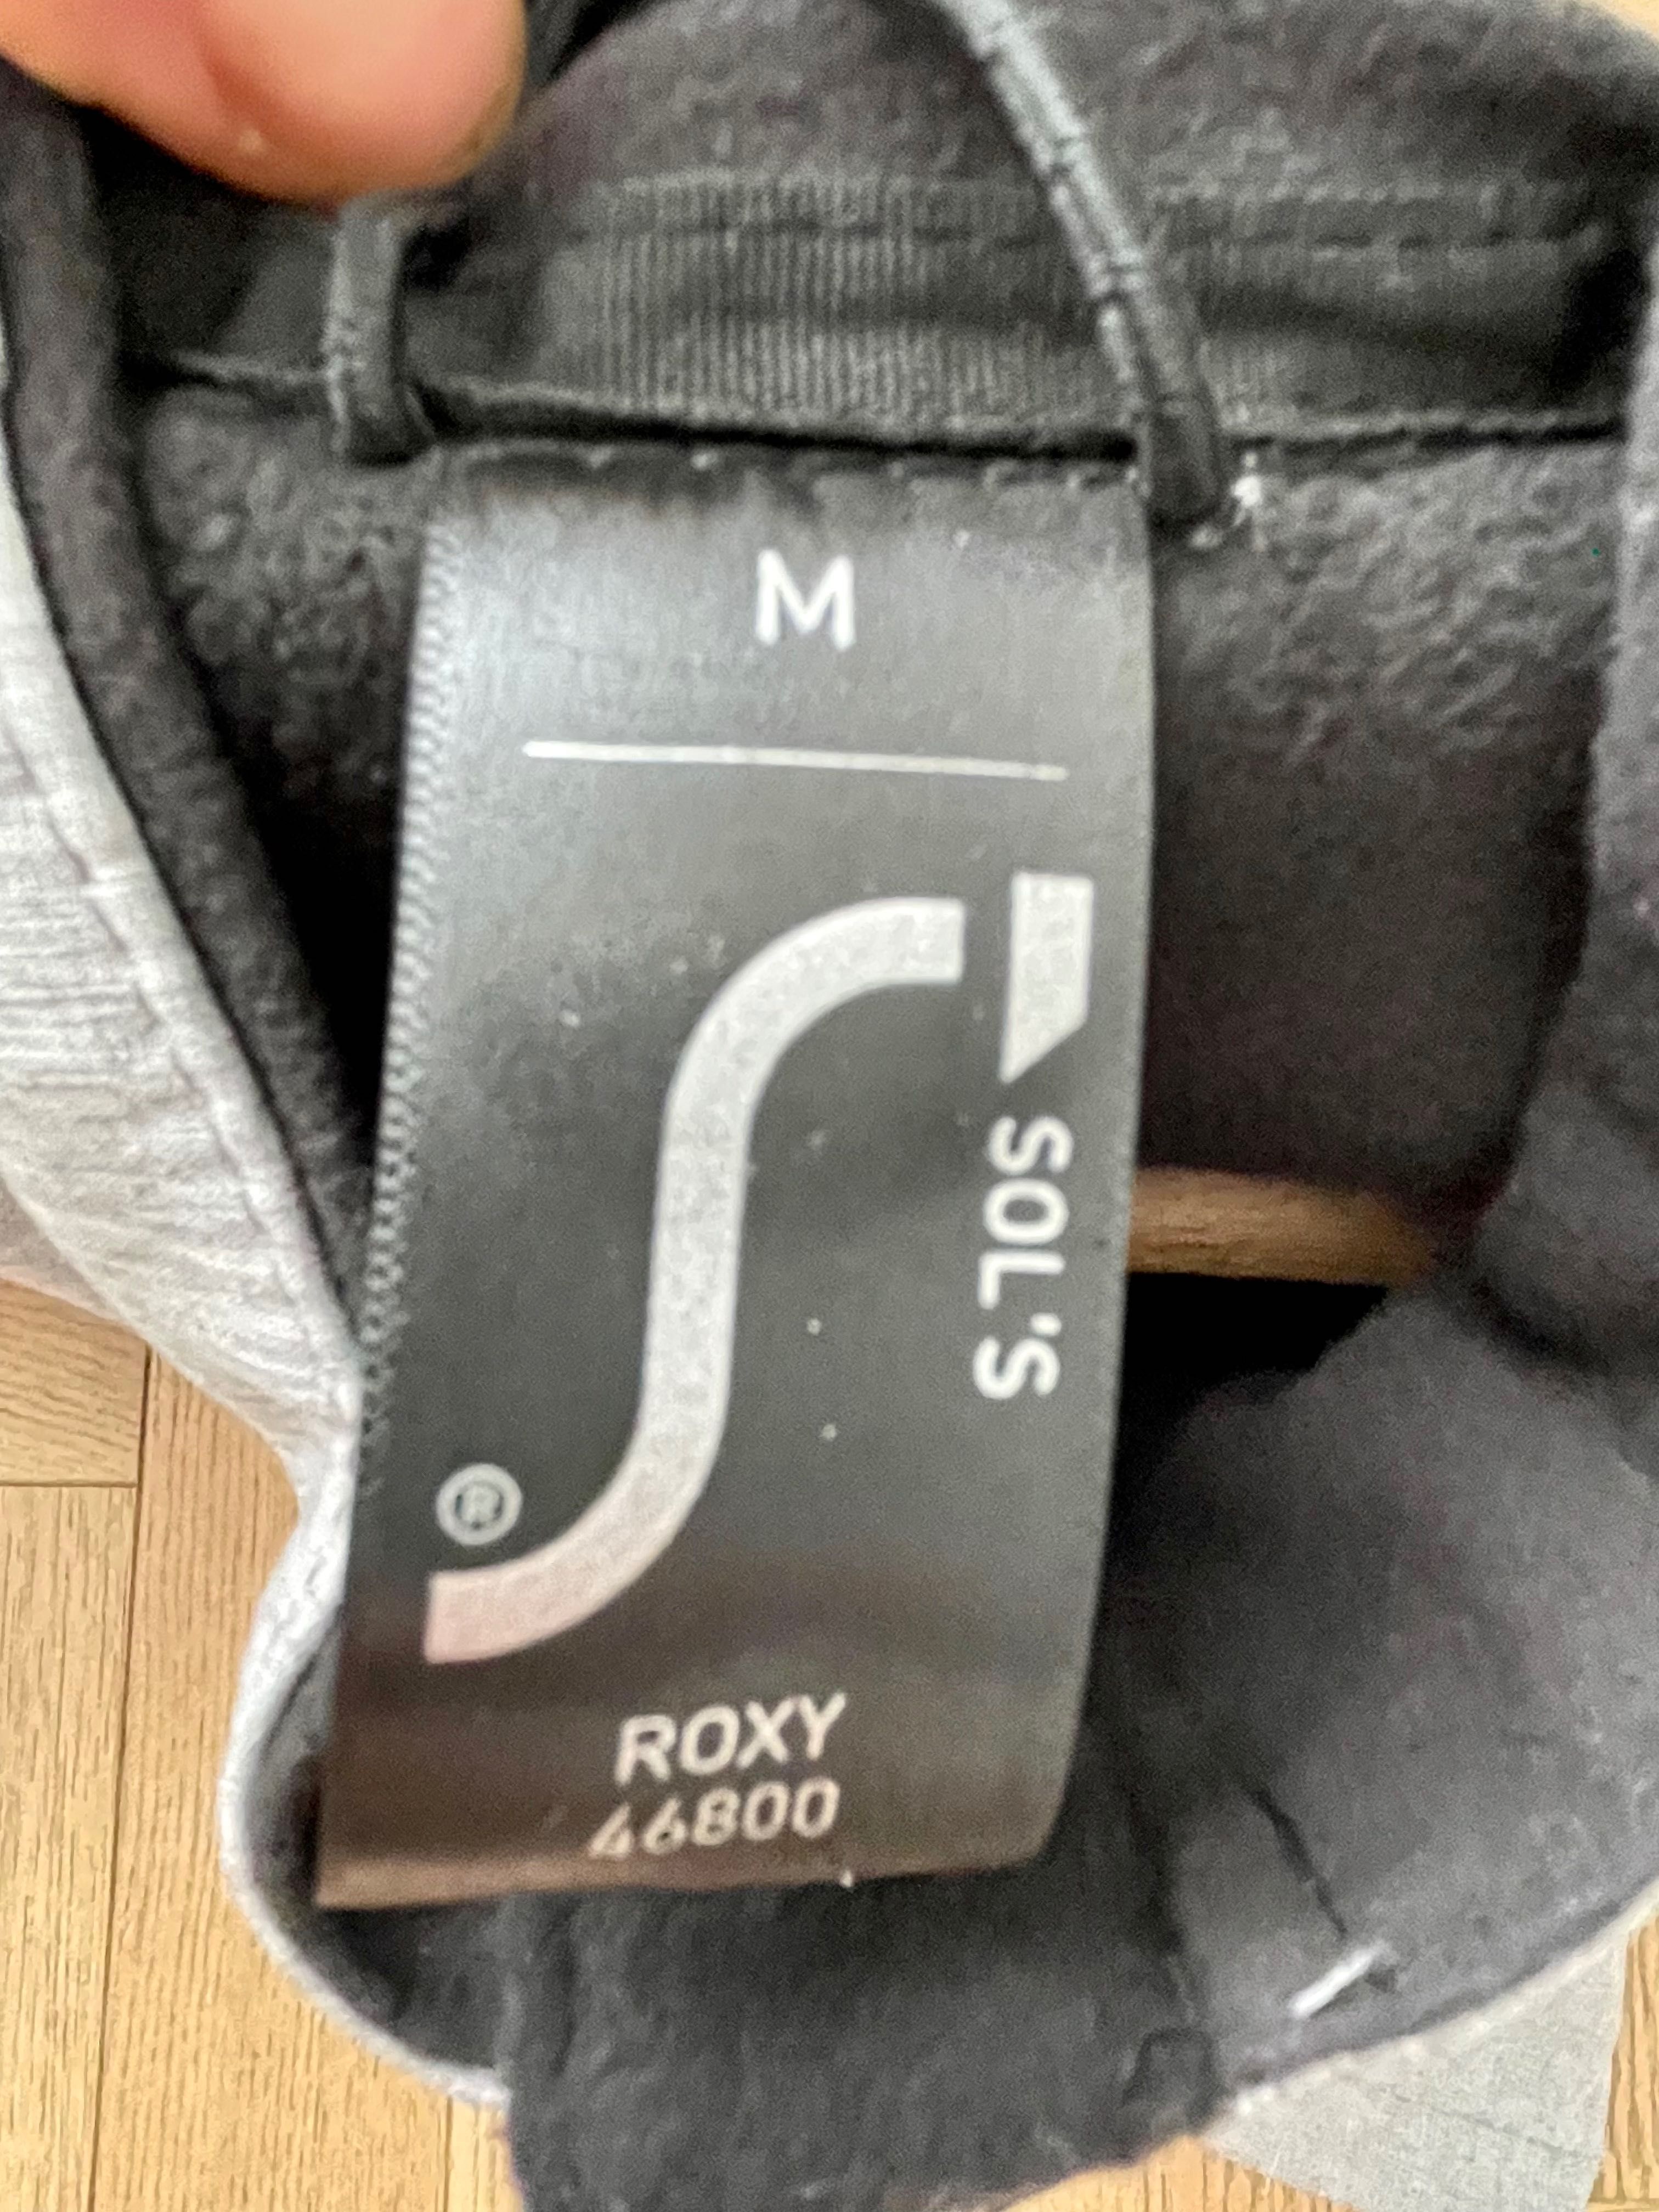 Kurtka sportowa Sol’s Roxy 46800 rozmiar M